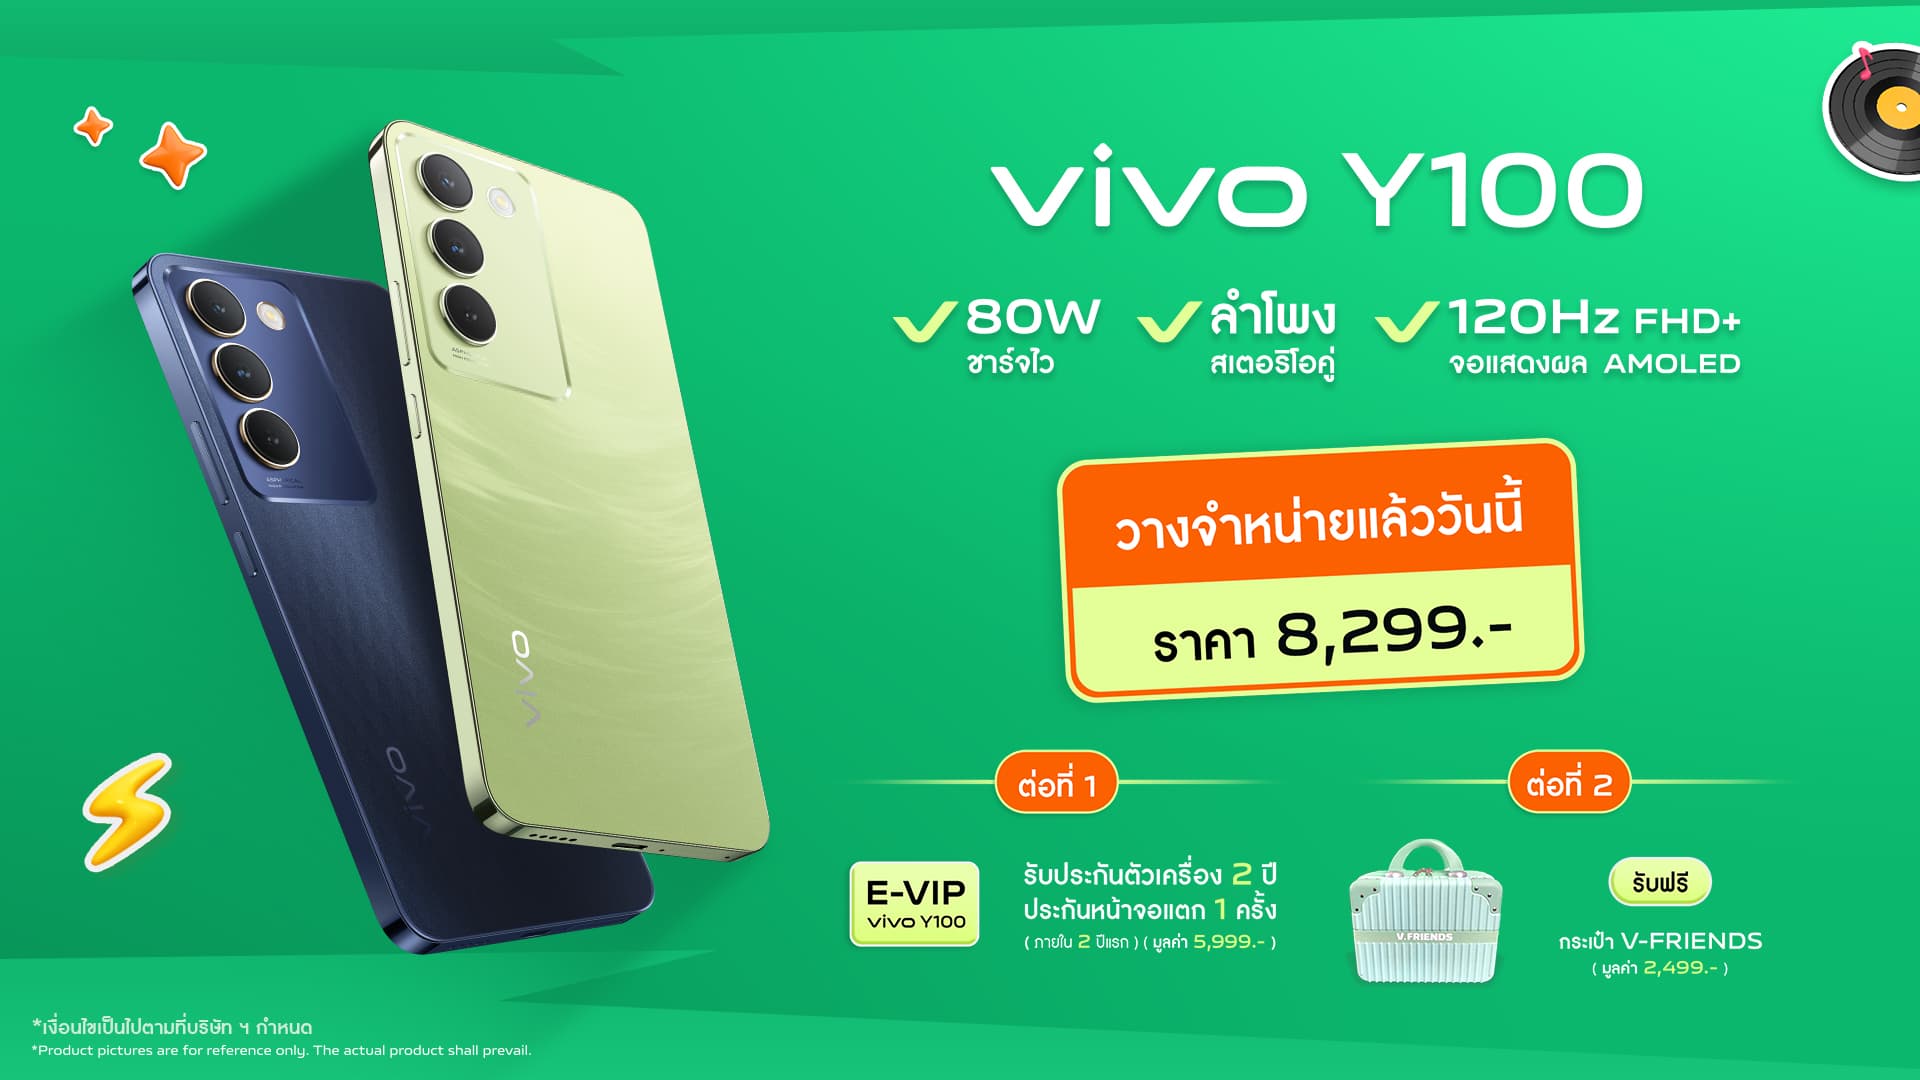 vivo เปิดตัว Y100 สมาร์ตโฟนน้องเล็ก สีเขียวฉ่ำรับซัมเมอร์ พร้อมสนุกกับสเปกเต็ม 100 ในราคา 8,299 บาท วางจำหน่ายแล้ววันนี้!